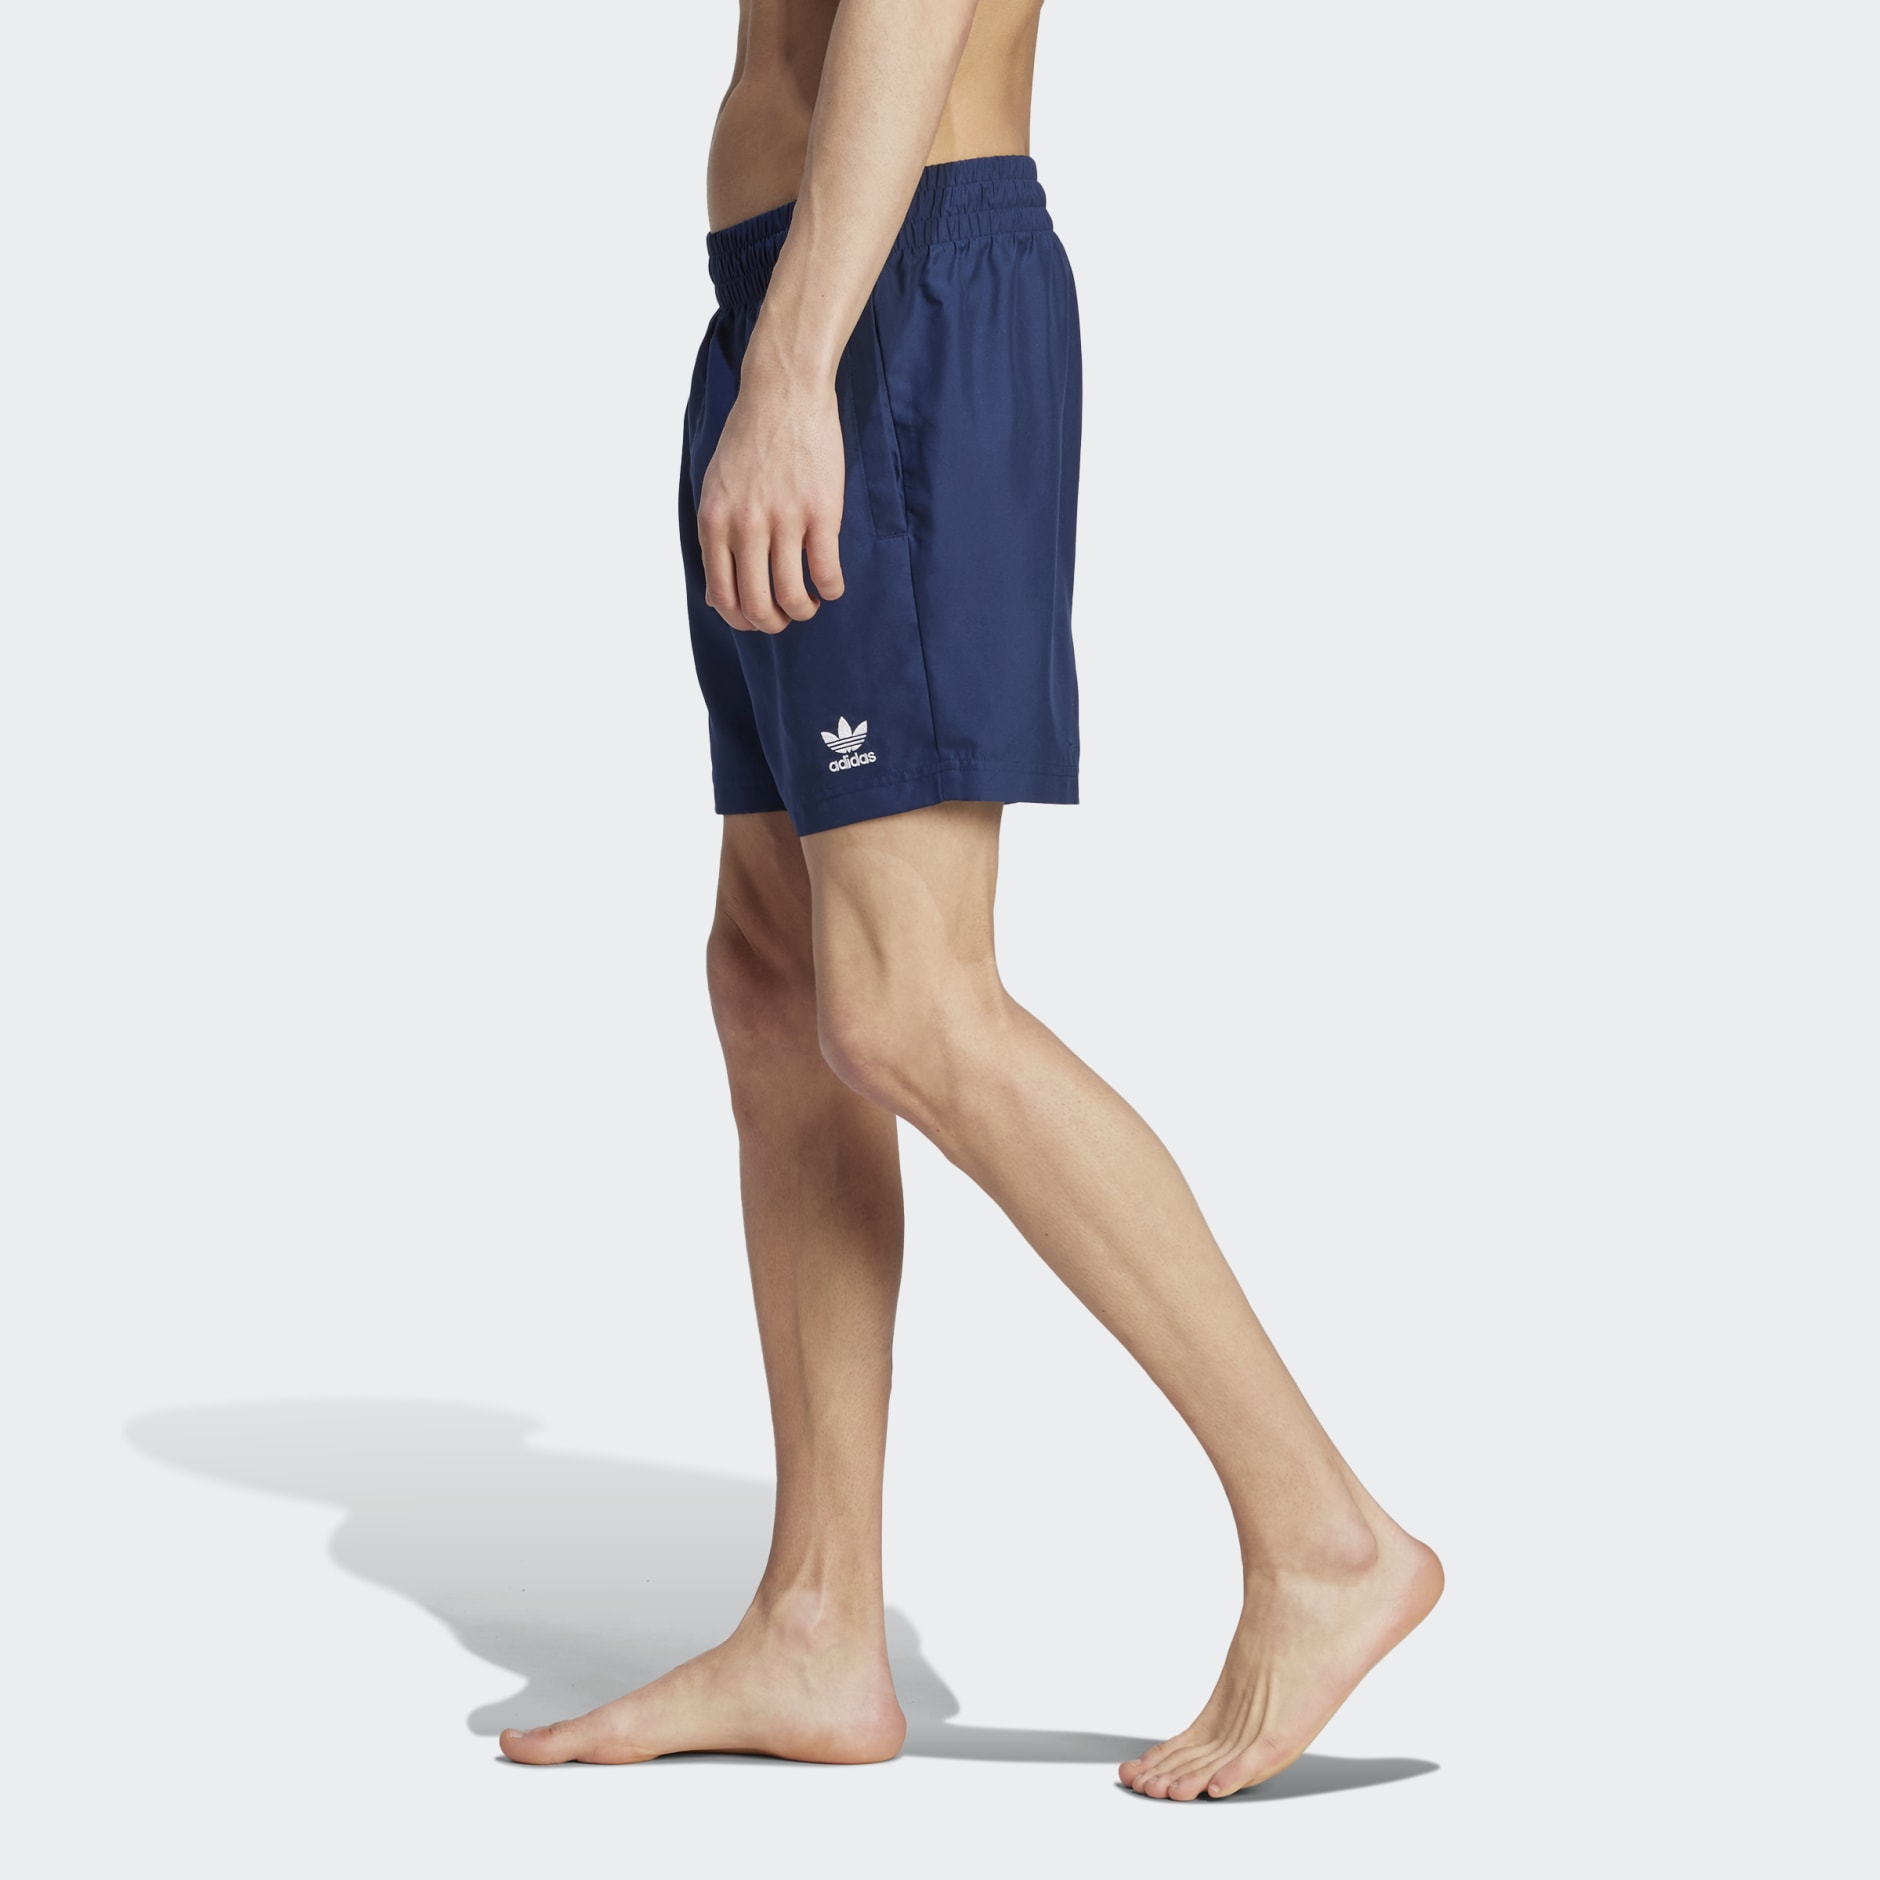 Men's Clothing - Adicolor Essentials Solid Swim Shorts - Blue | adidas ...